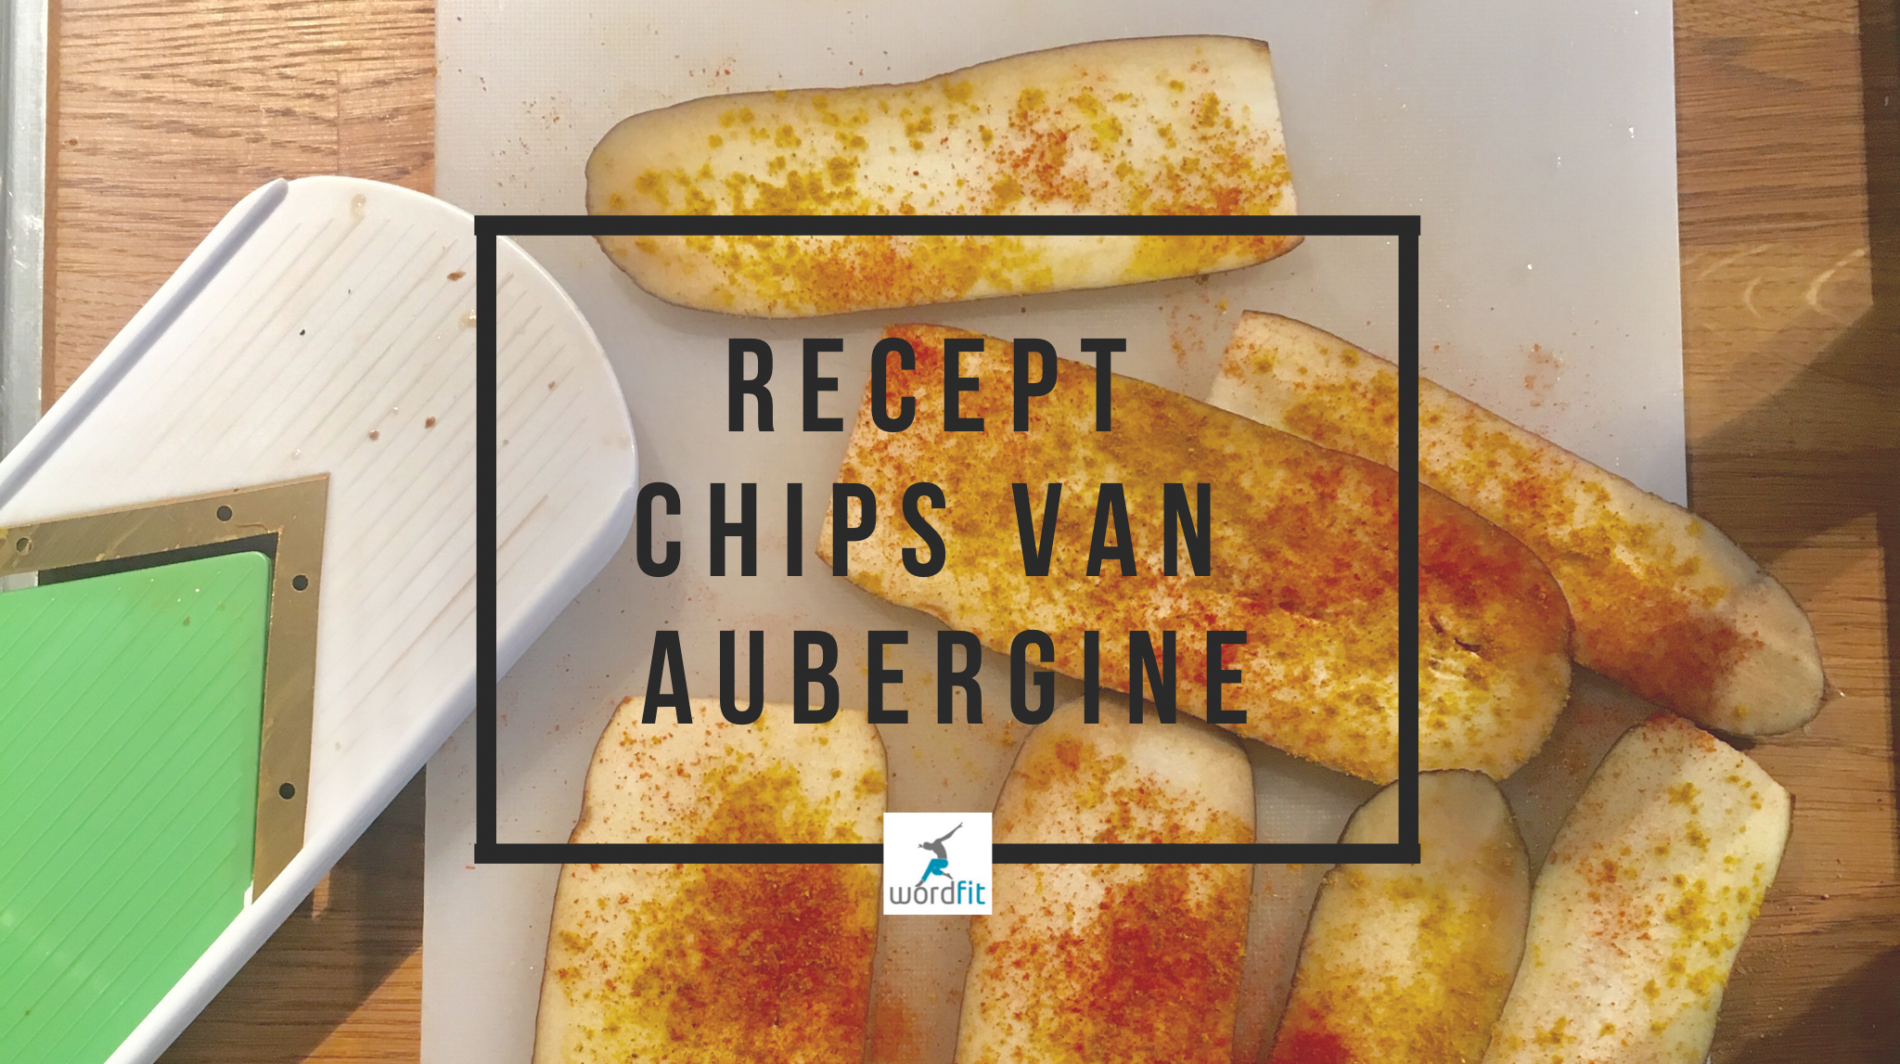 Recept chips van aubergine WordFit.be Gezonder eten